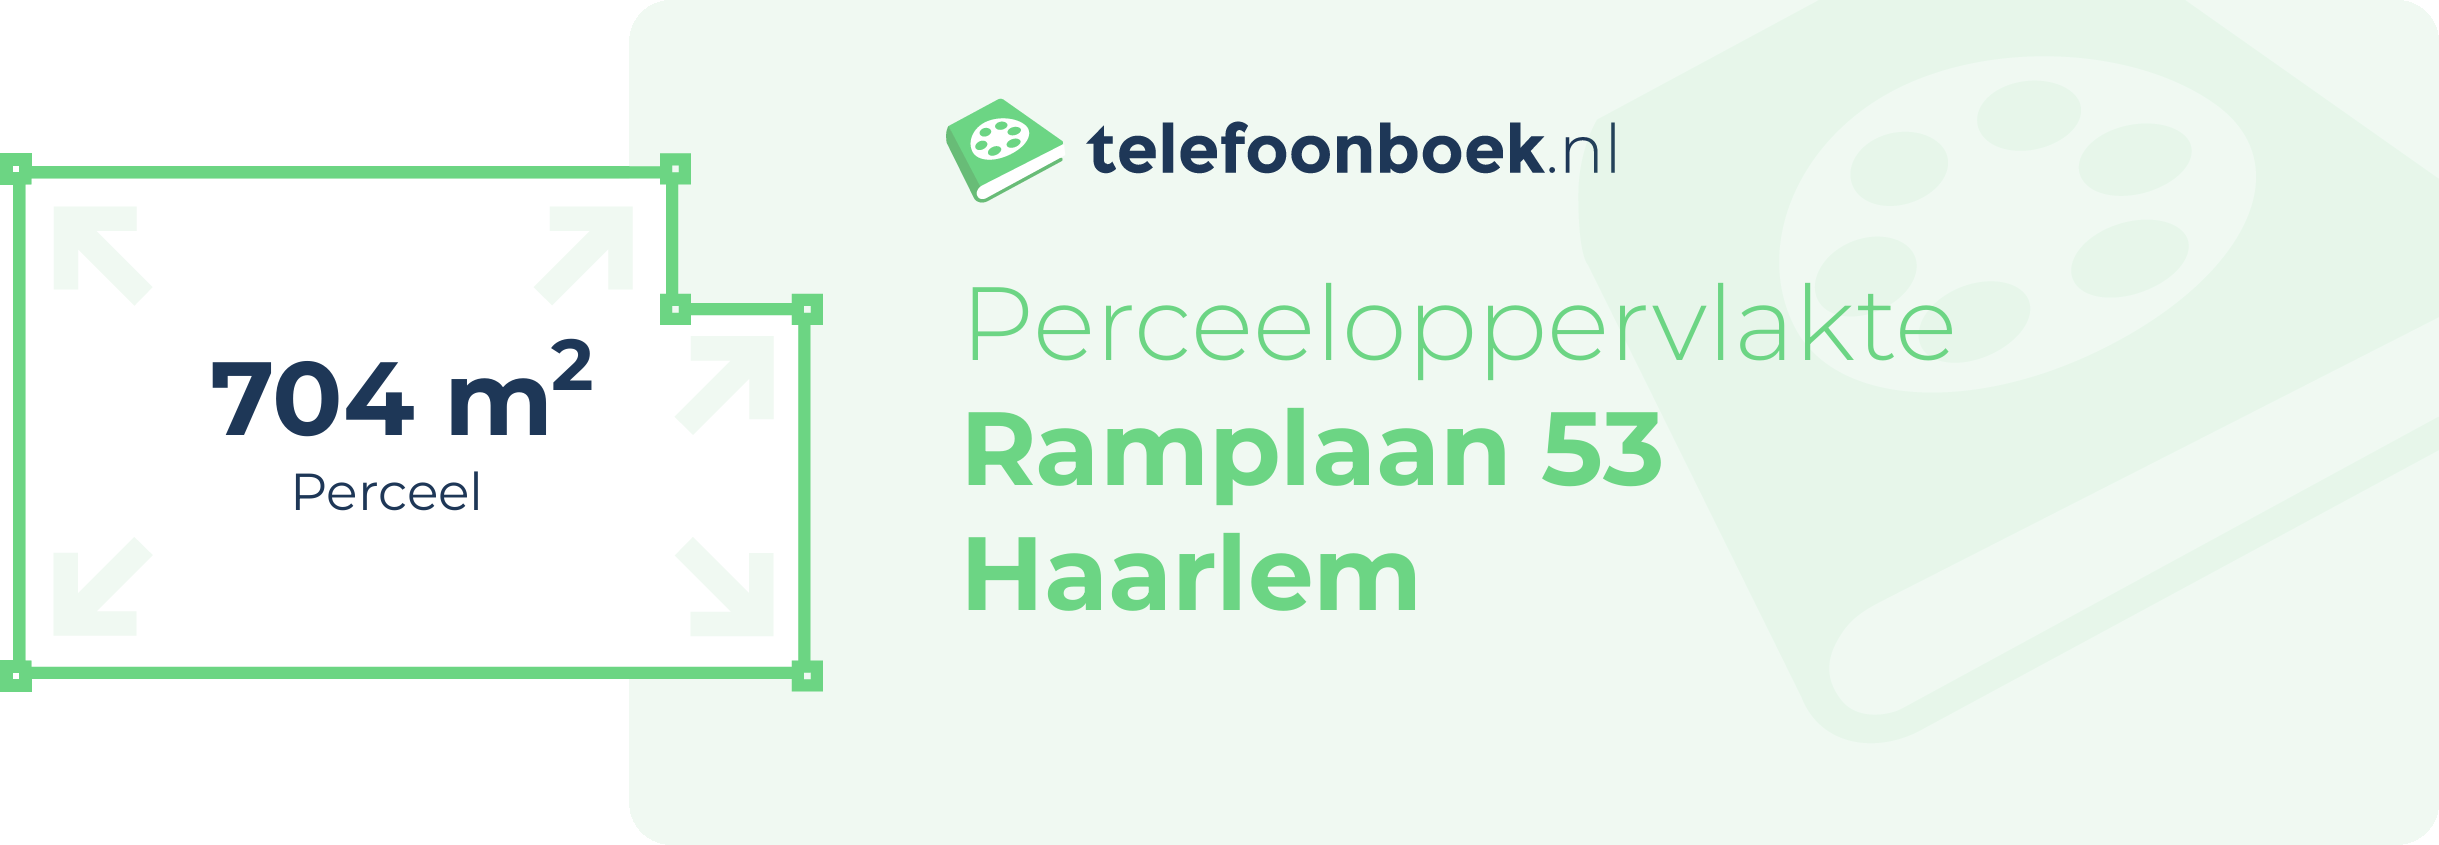 Perceeloppervlakte Ramplaan 53 Haarlem